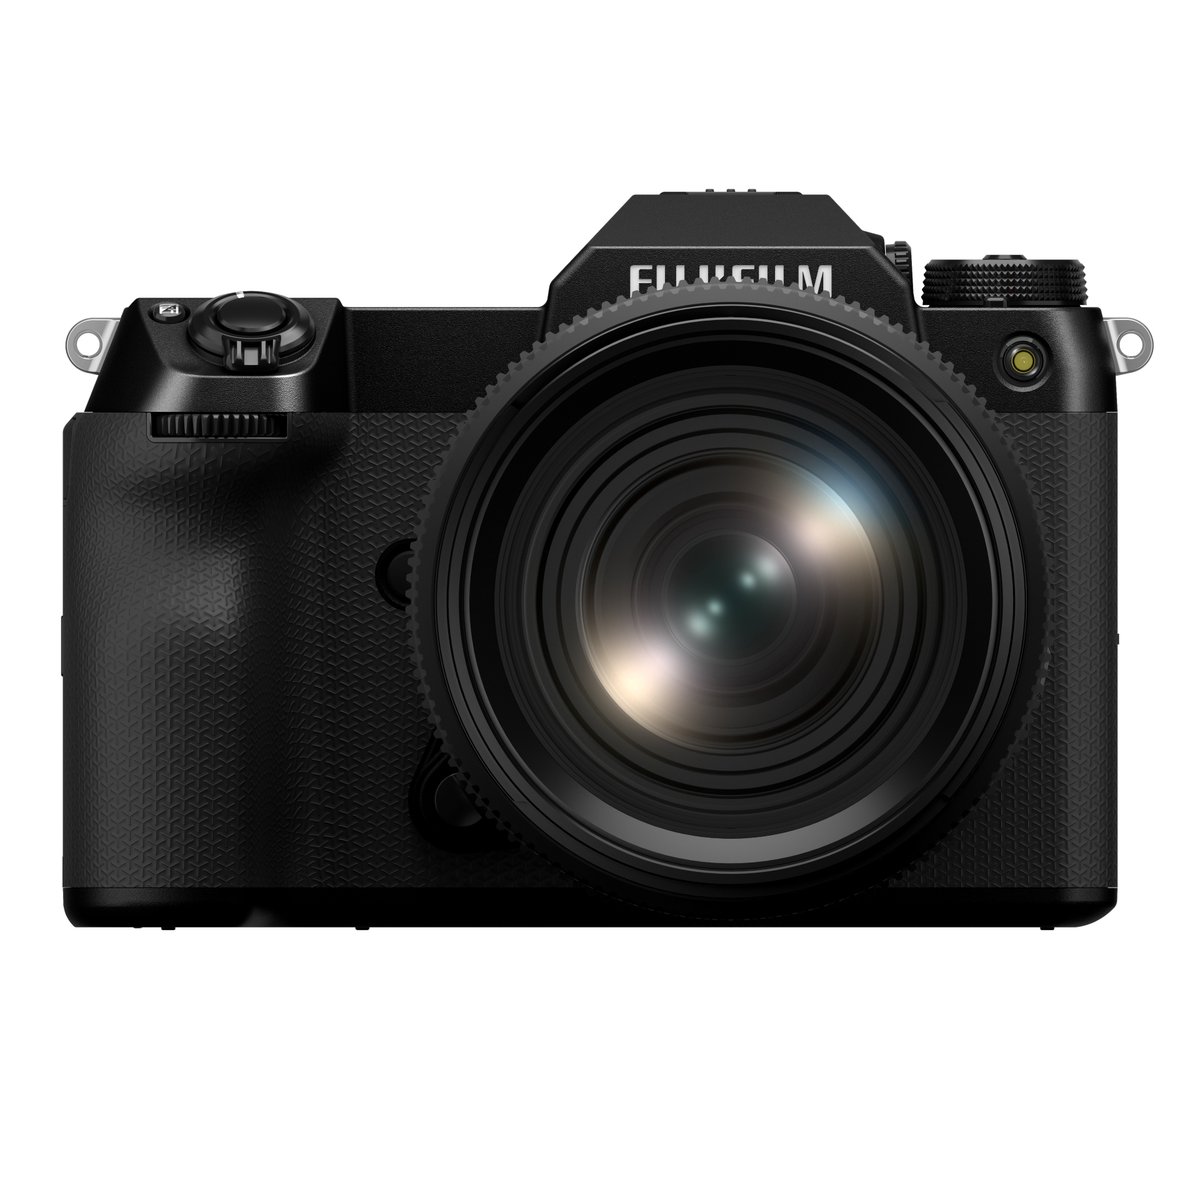 【新製品発表】
この度弊社は、35mm判の約1.7倍となるラージフォーマットセンサーを搭載したミラーレスデジタルカメラ「GFXシリーズ」の最新モデルとして、「FUJIFILM GFX100S II」を発売します。 
fujifilm-x.com/ja-jp/products…

#gfx100sii #富士フイルム #FUJIFILM #Xシリーズ #fujifilm_xseries